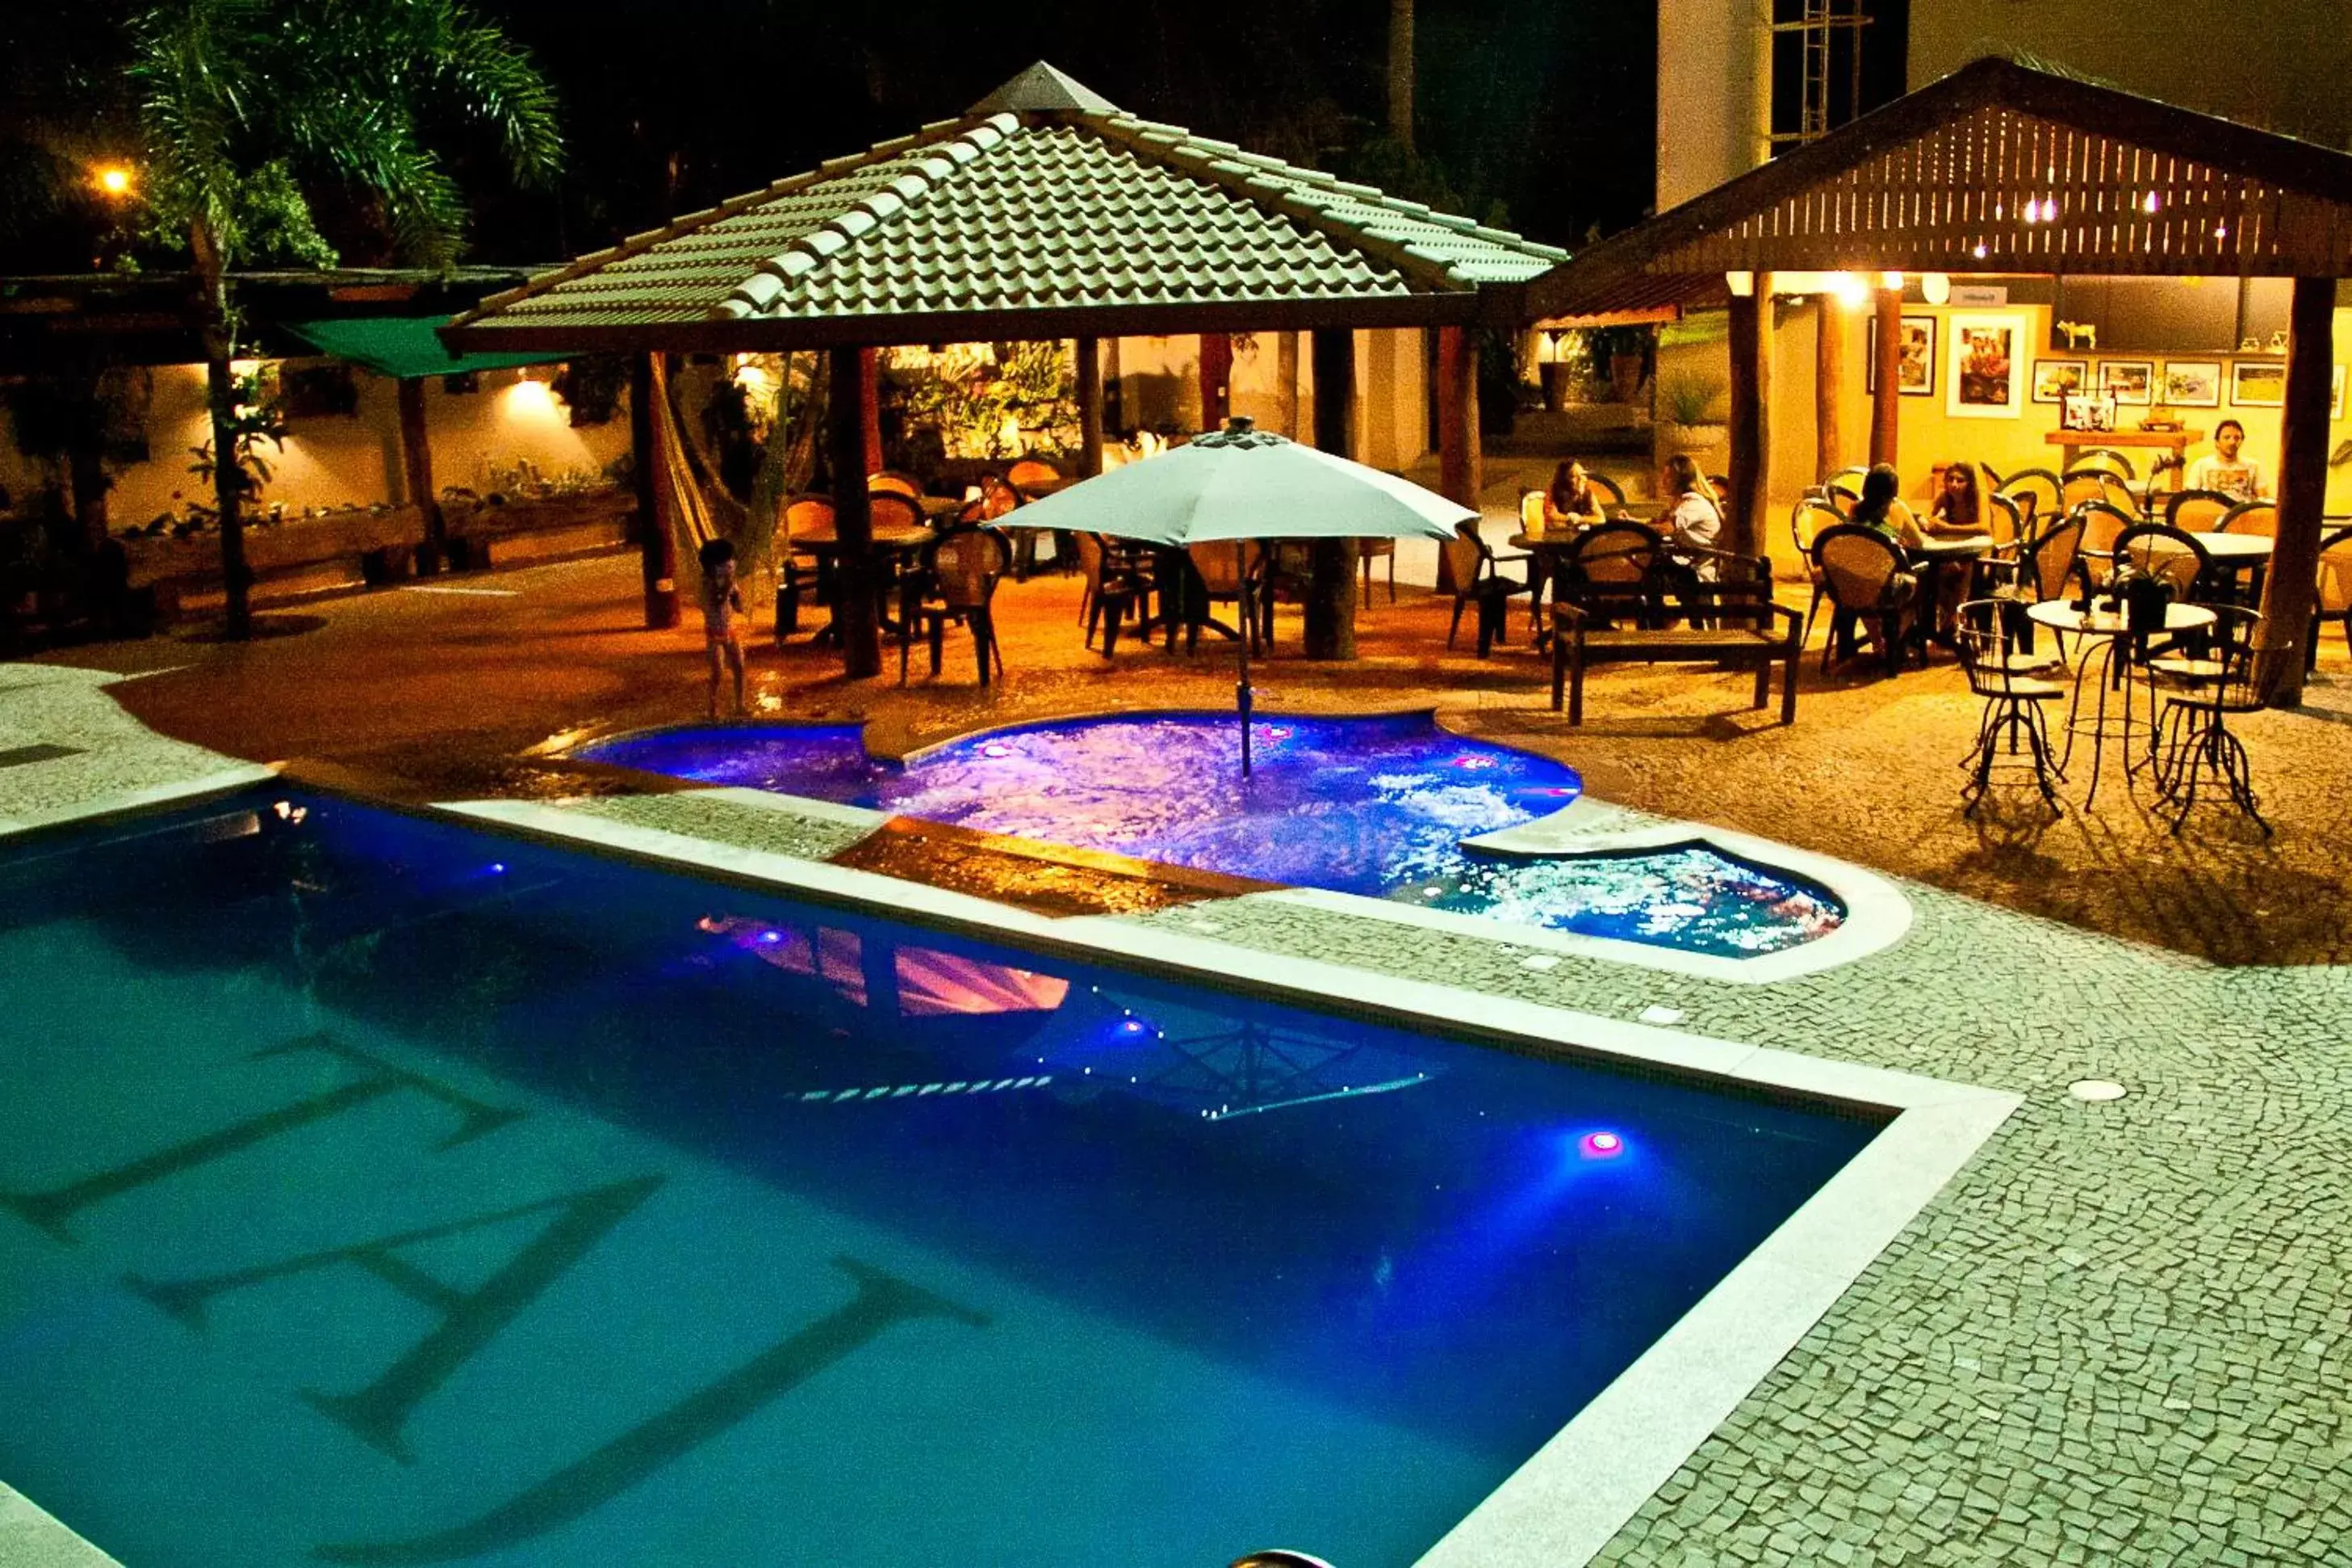 Night, Swimming Pool in Taj Hotel